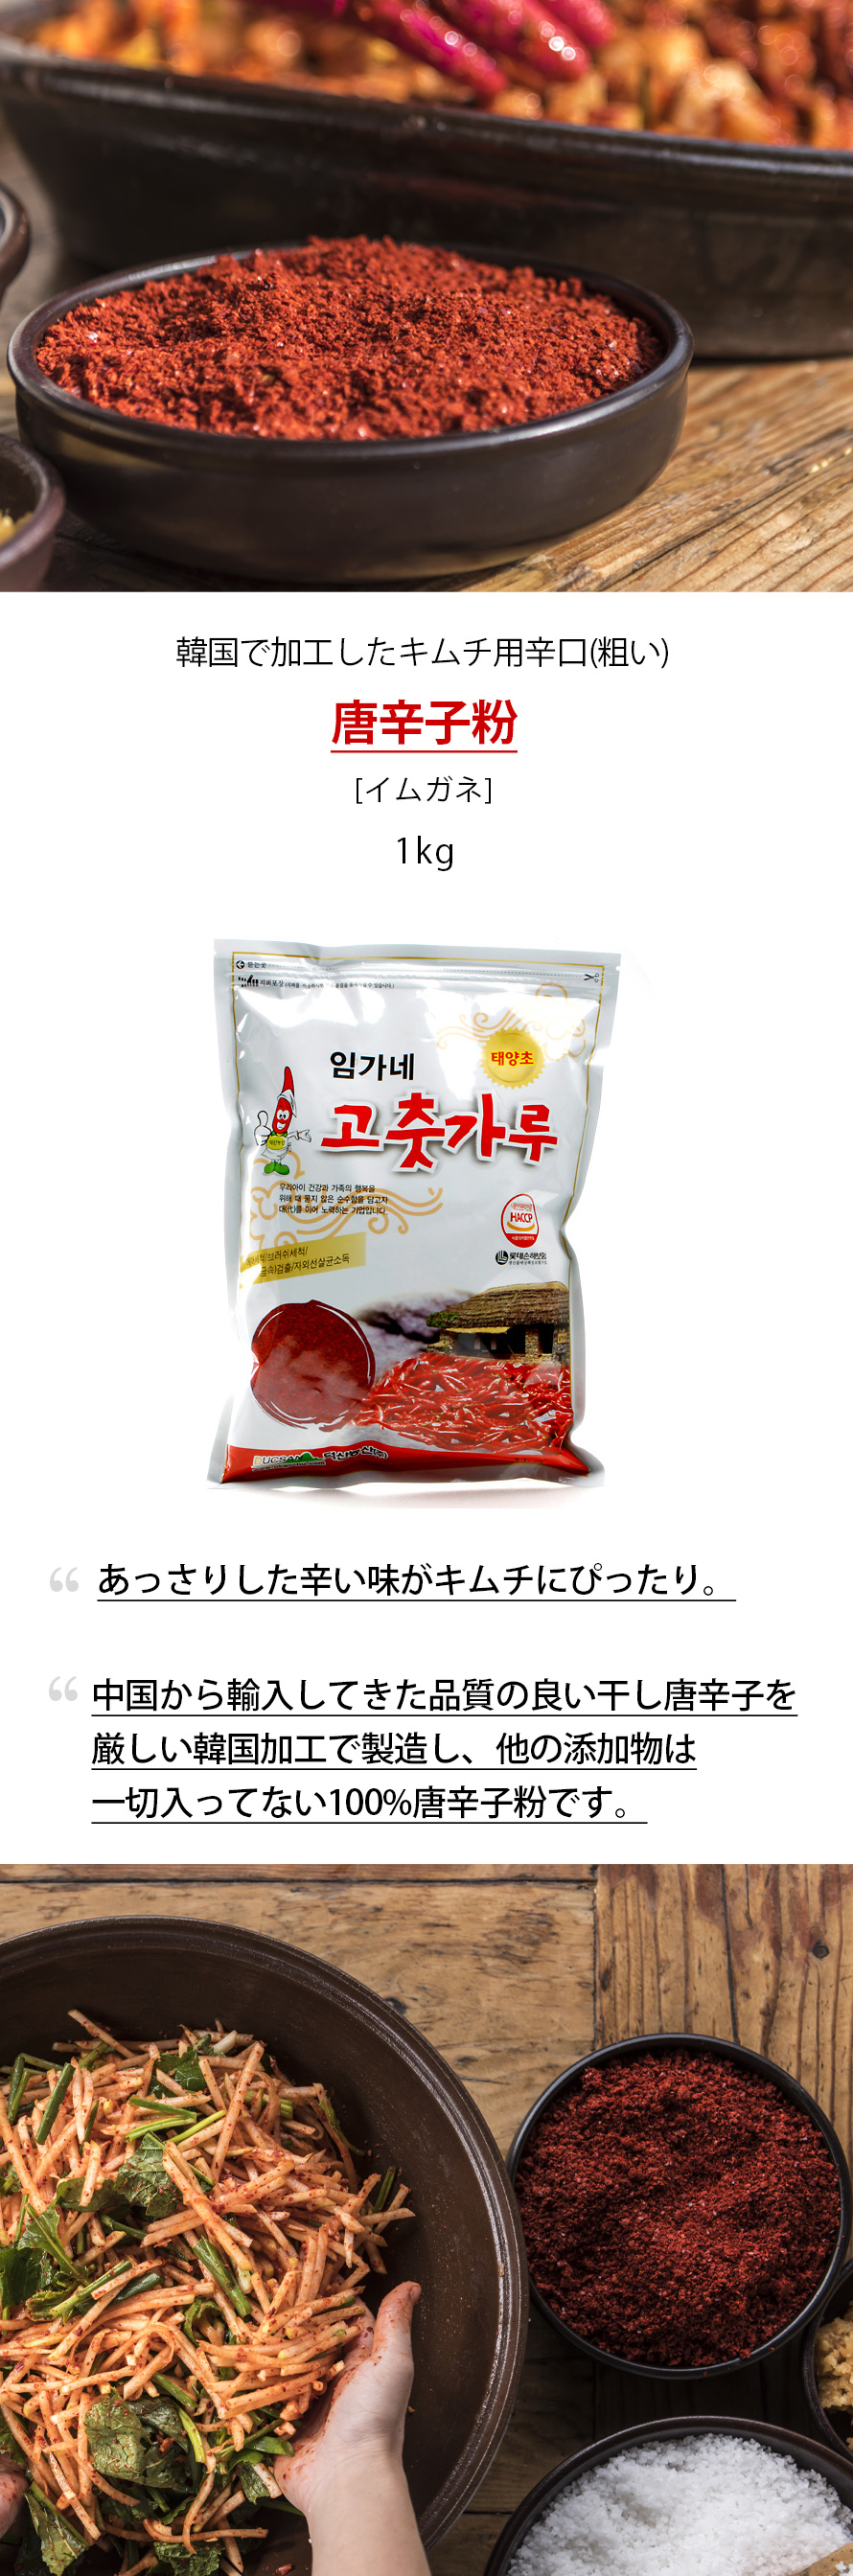 唐辛子粉1kg-キムチ用辛め(粗い)/韓国調味料/韓国唐辛子 :3231:韓国市場 - 通販 - Yahoo!ショッピング